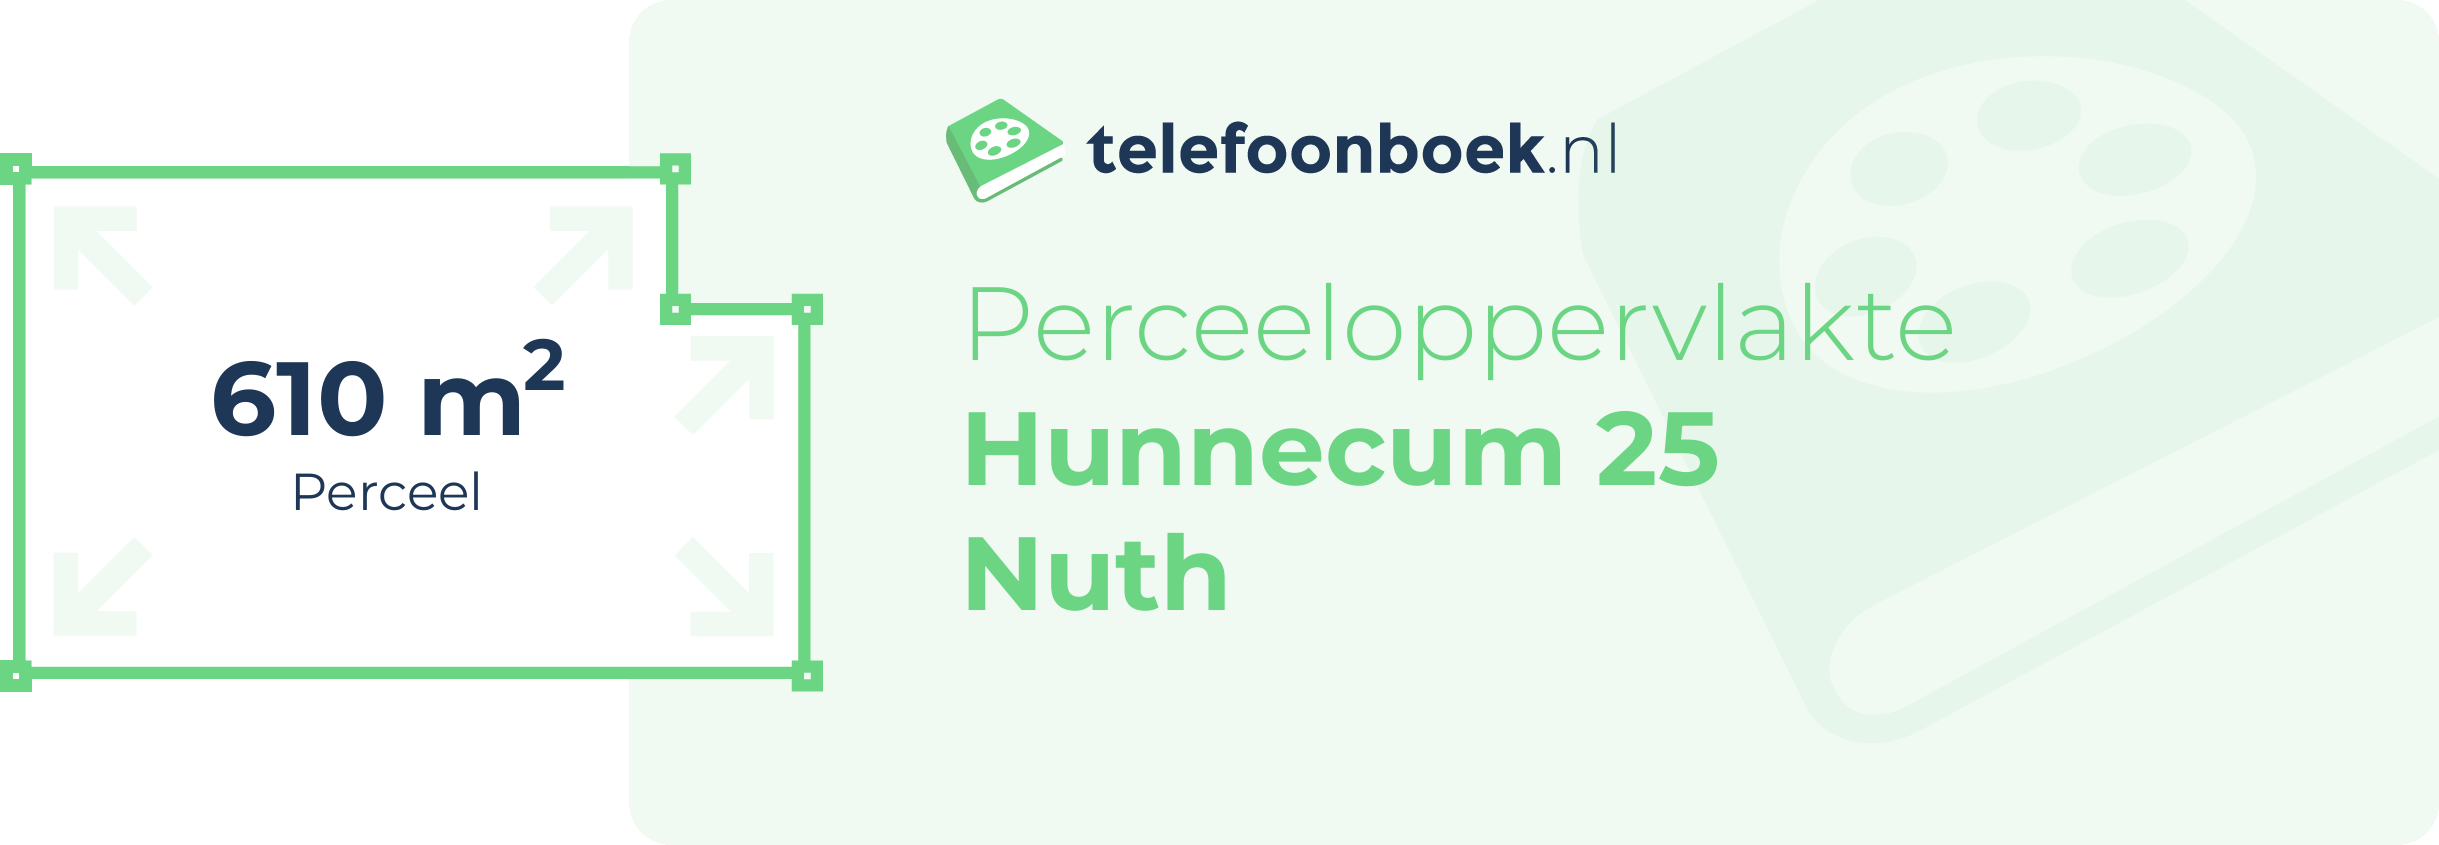 Perceeloppervlakte Hunnecum 25 Nuth